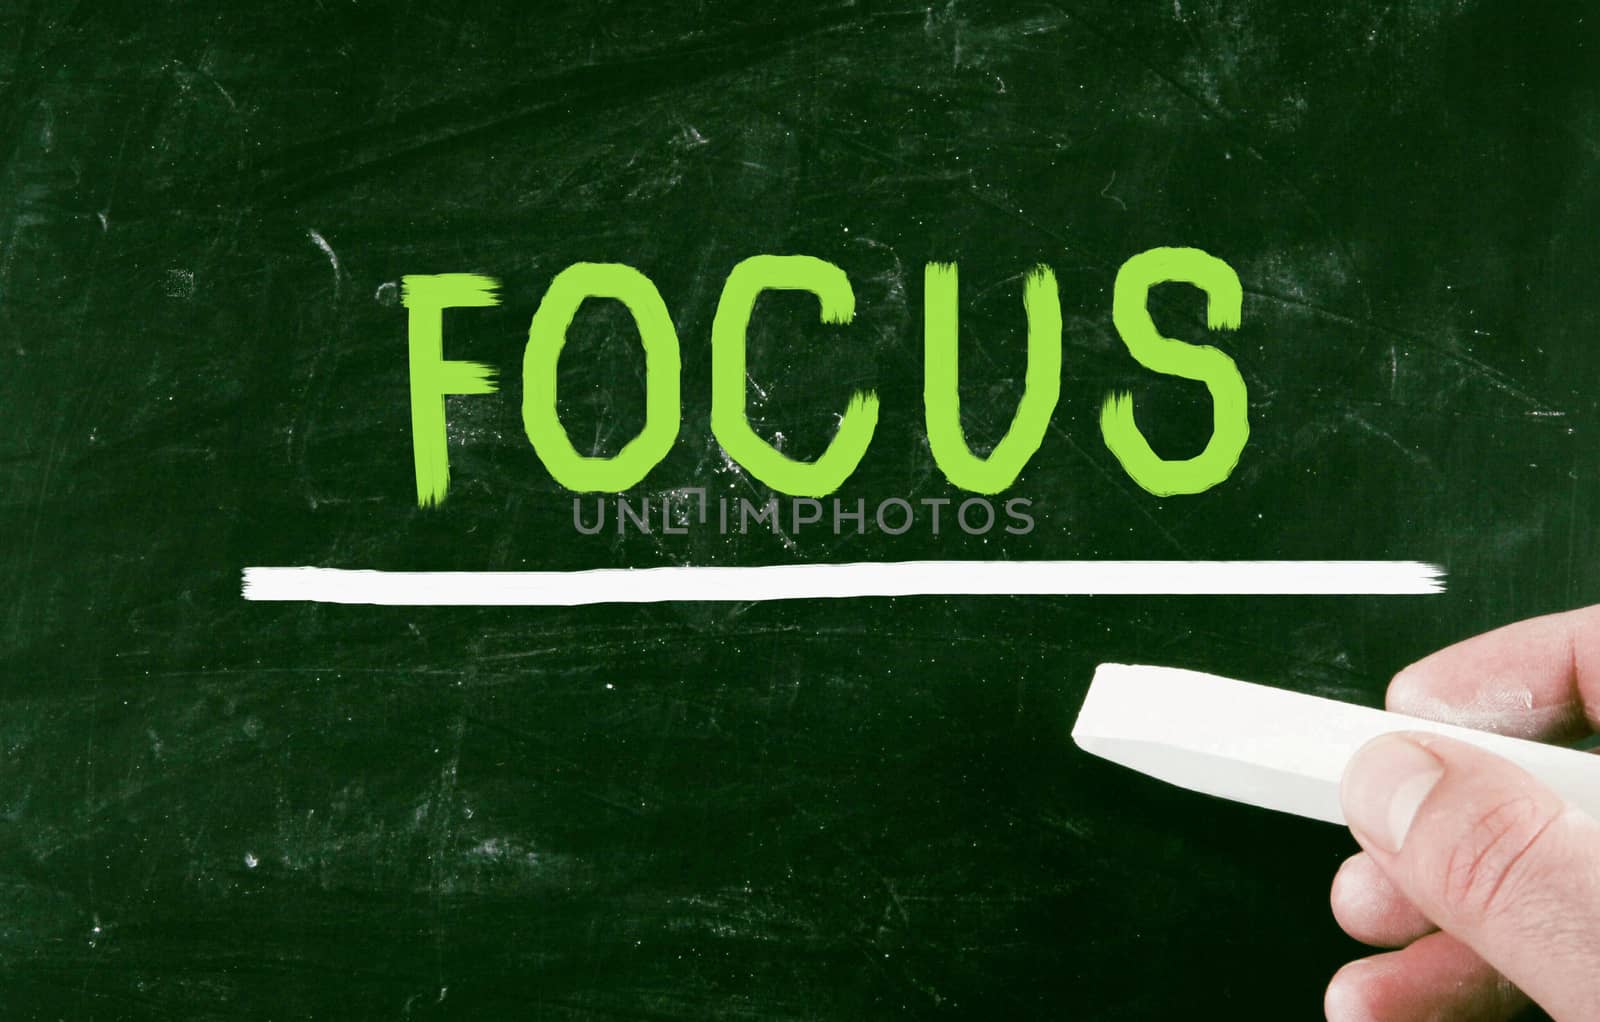 focus concept